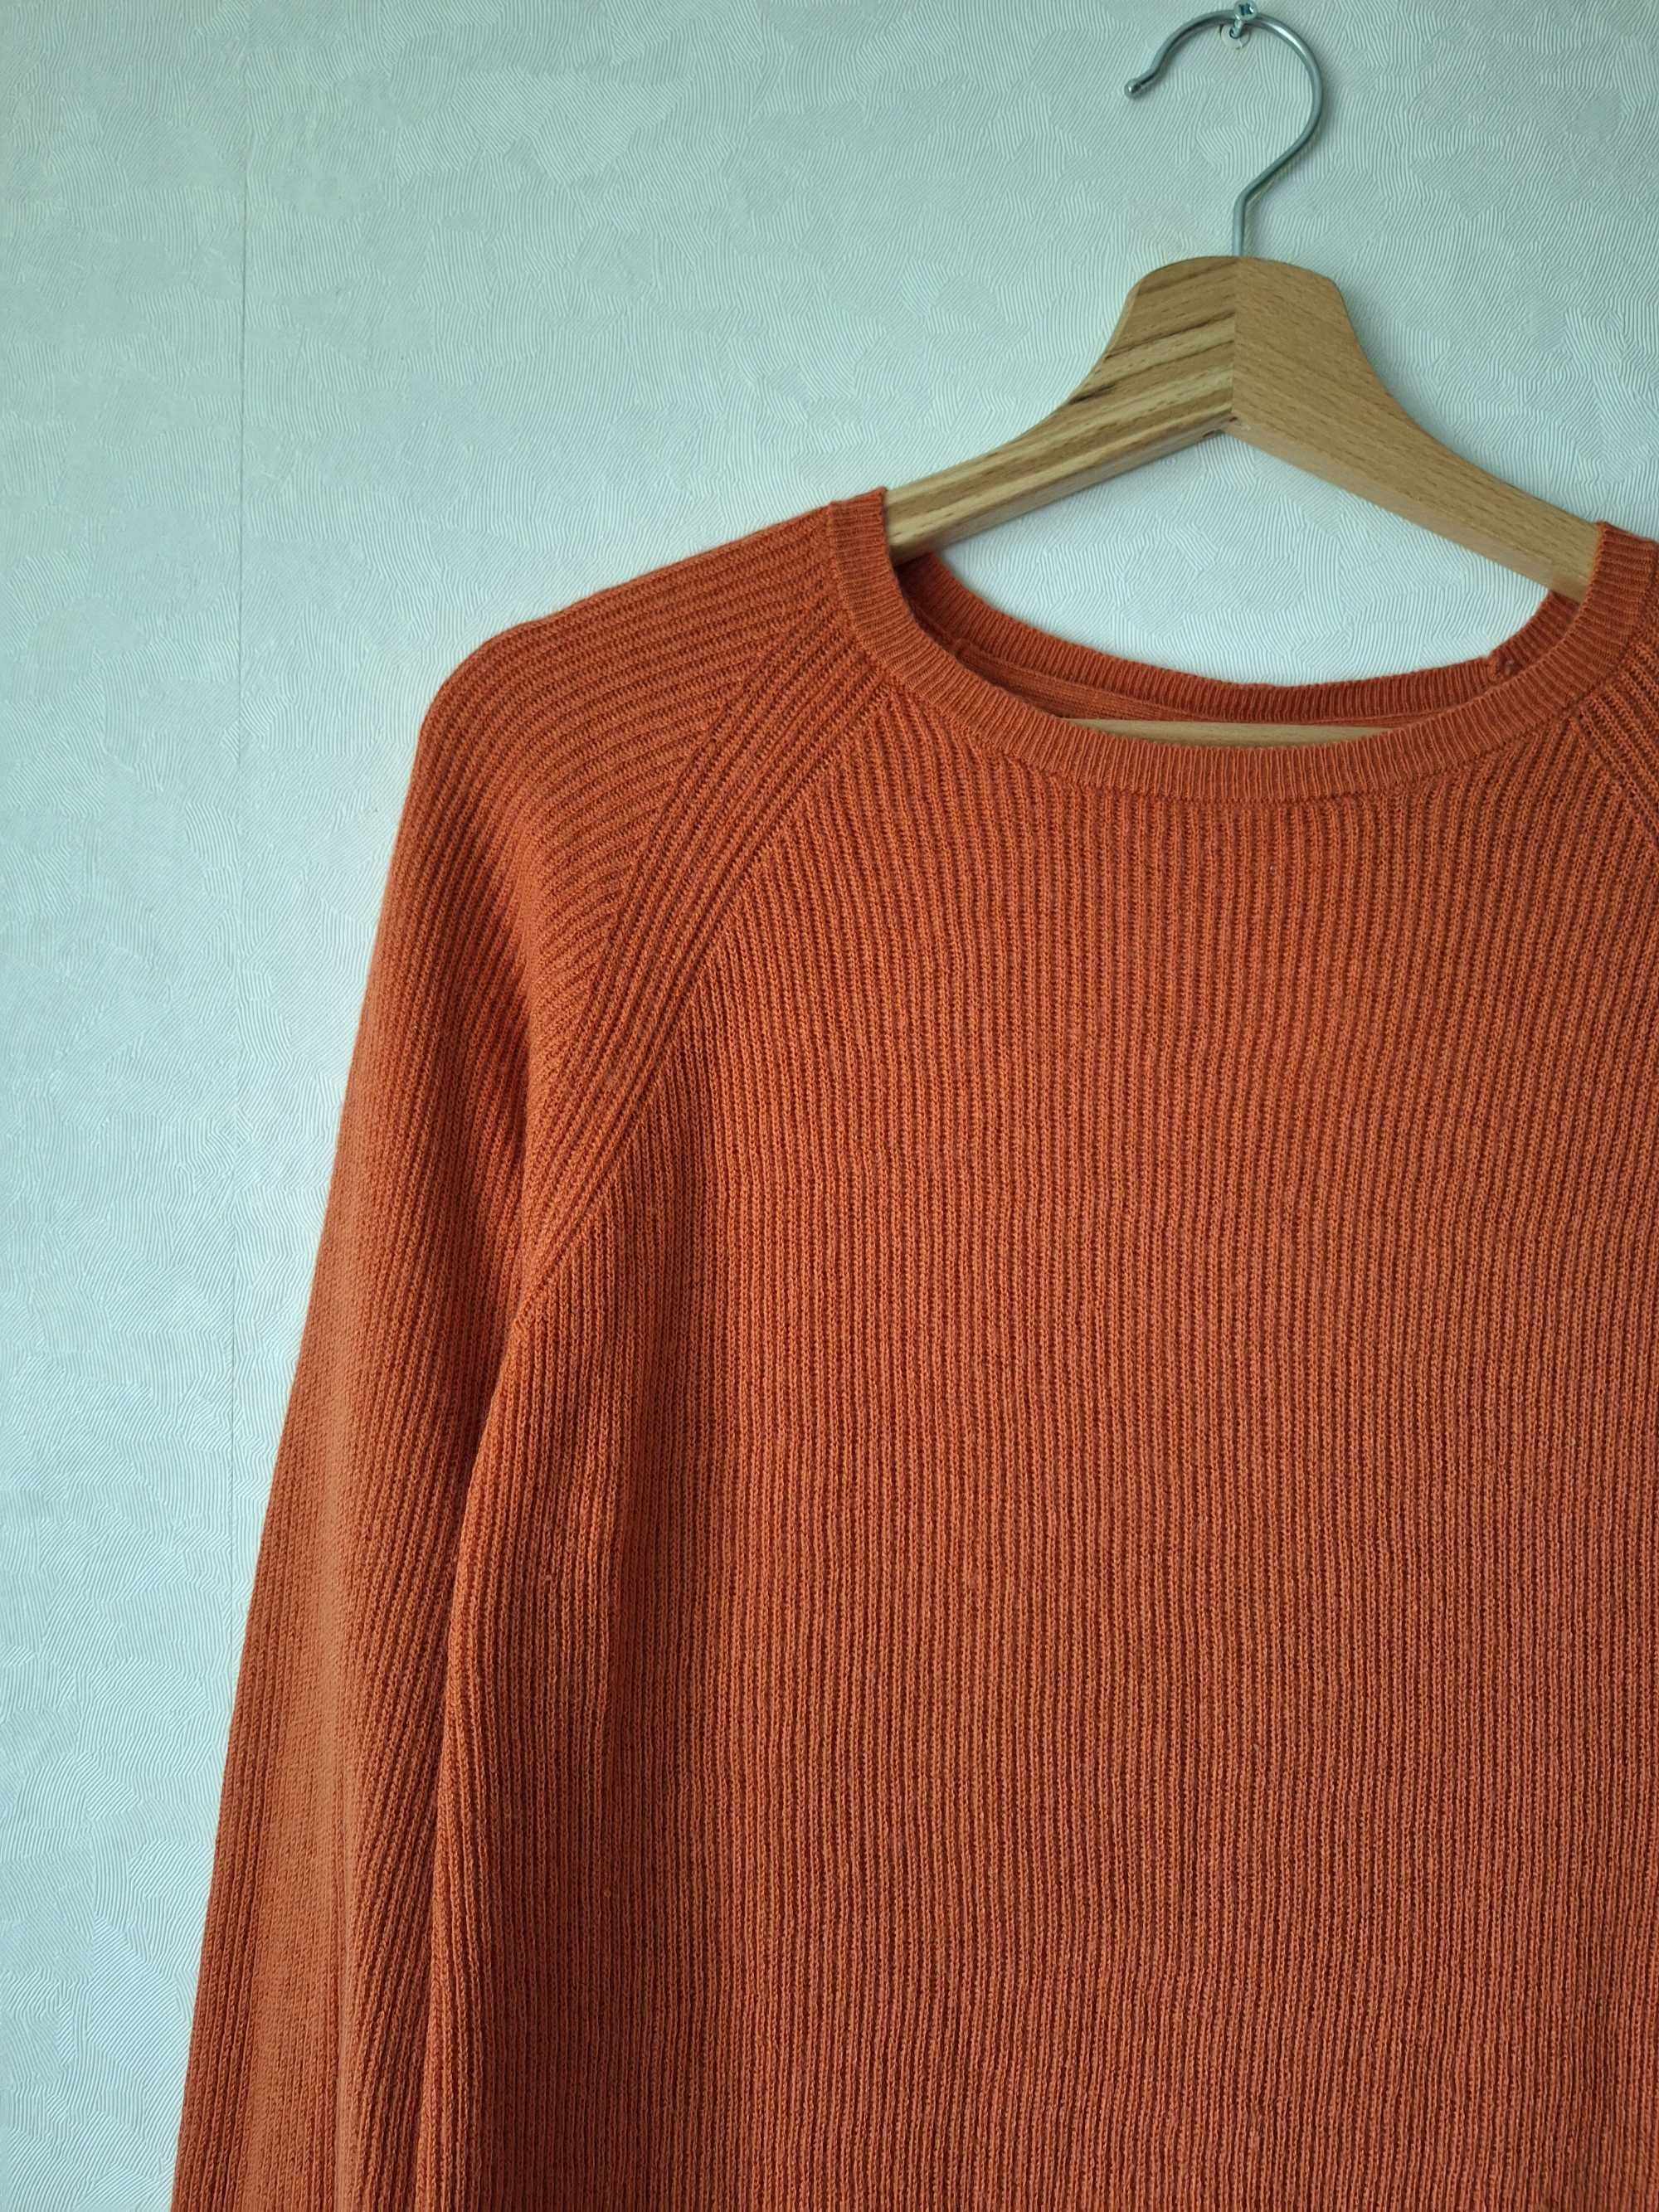 Days Liks This wełniany sweterek 38 M wełna pomarańczowy ceglany